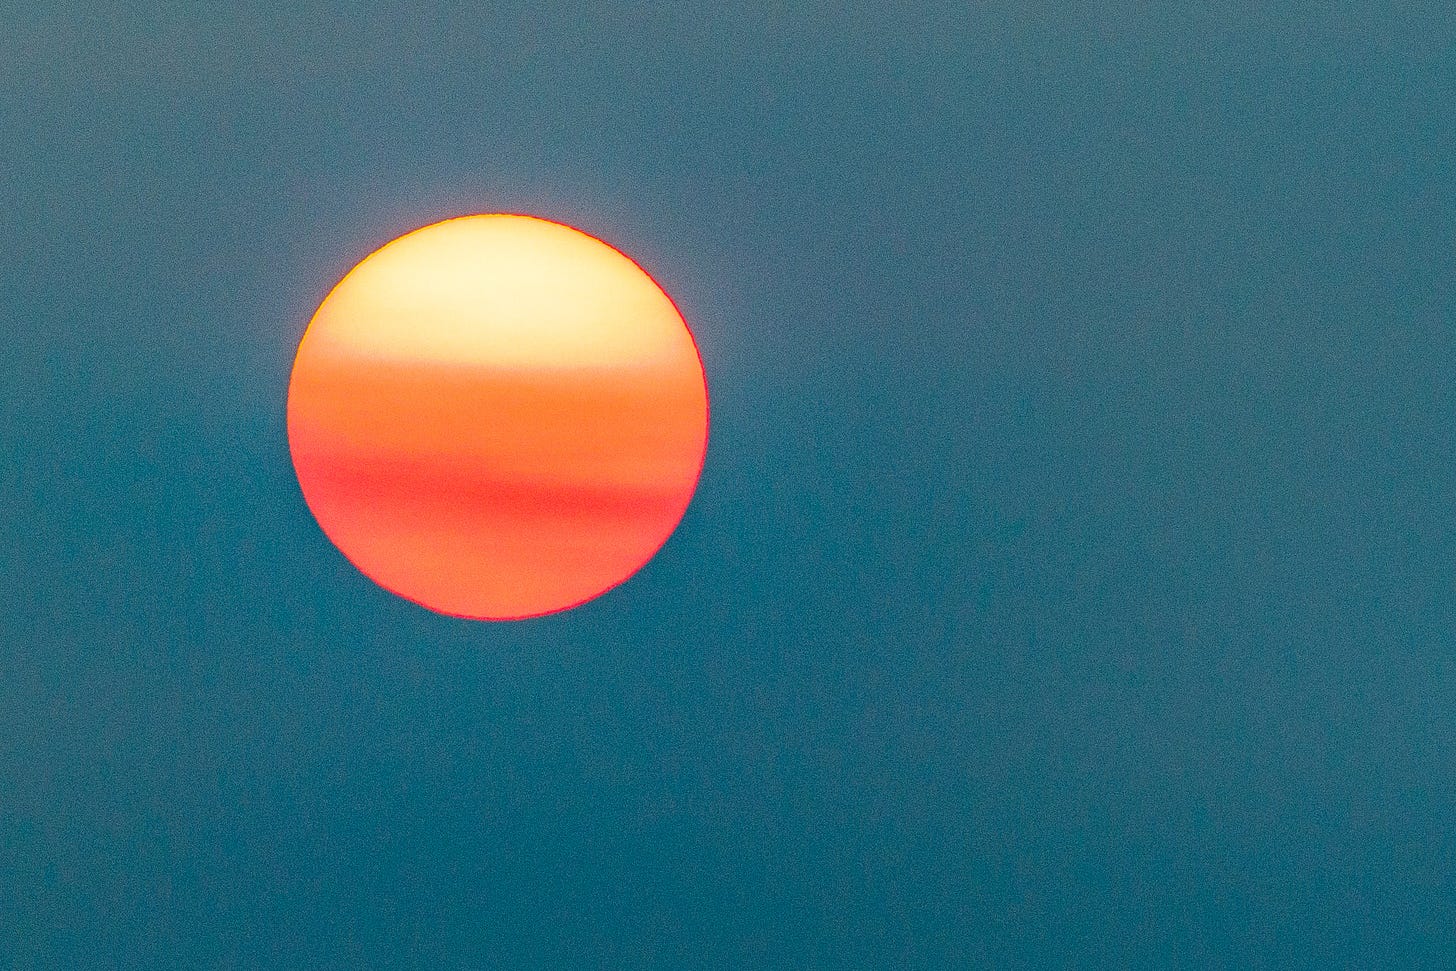 Hazy sun hangs orange against a teal sky